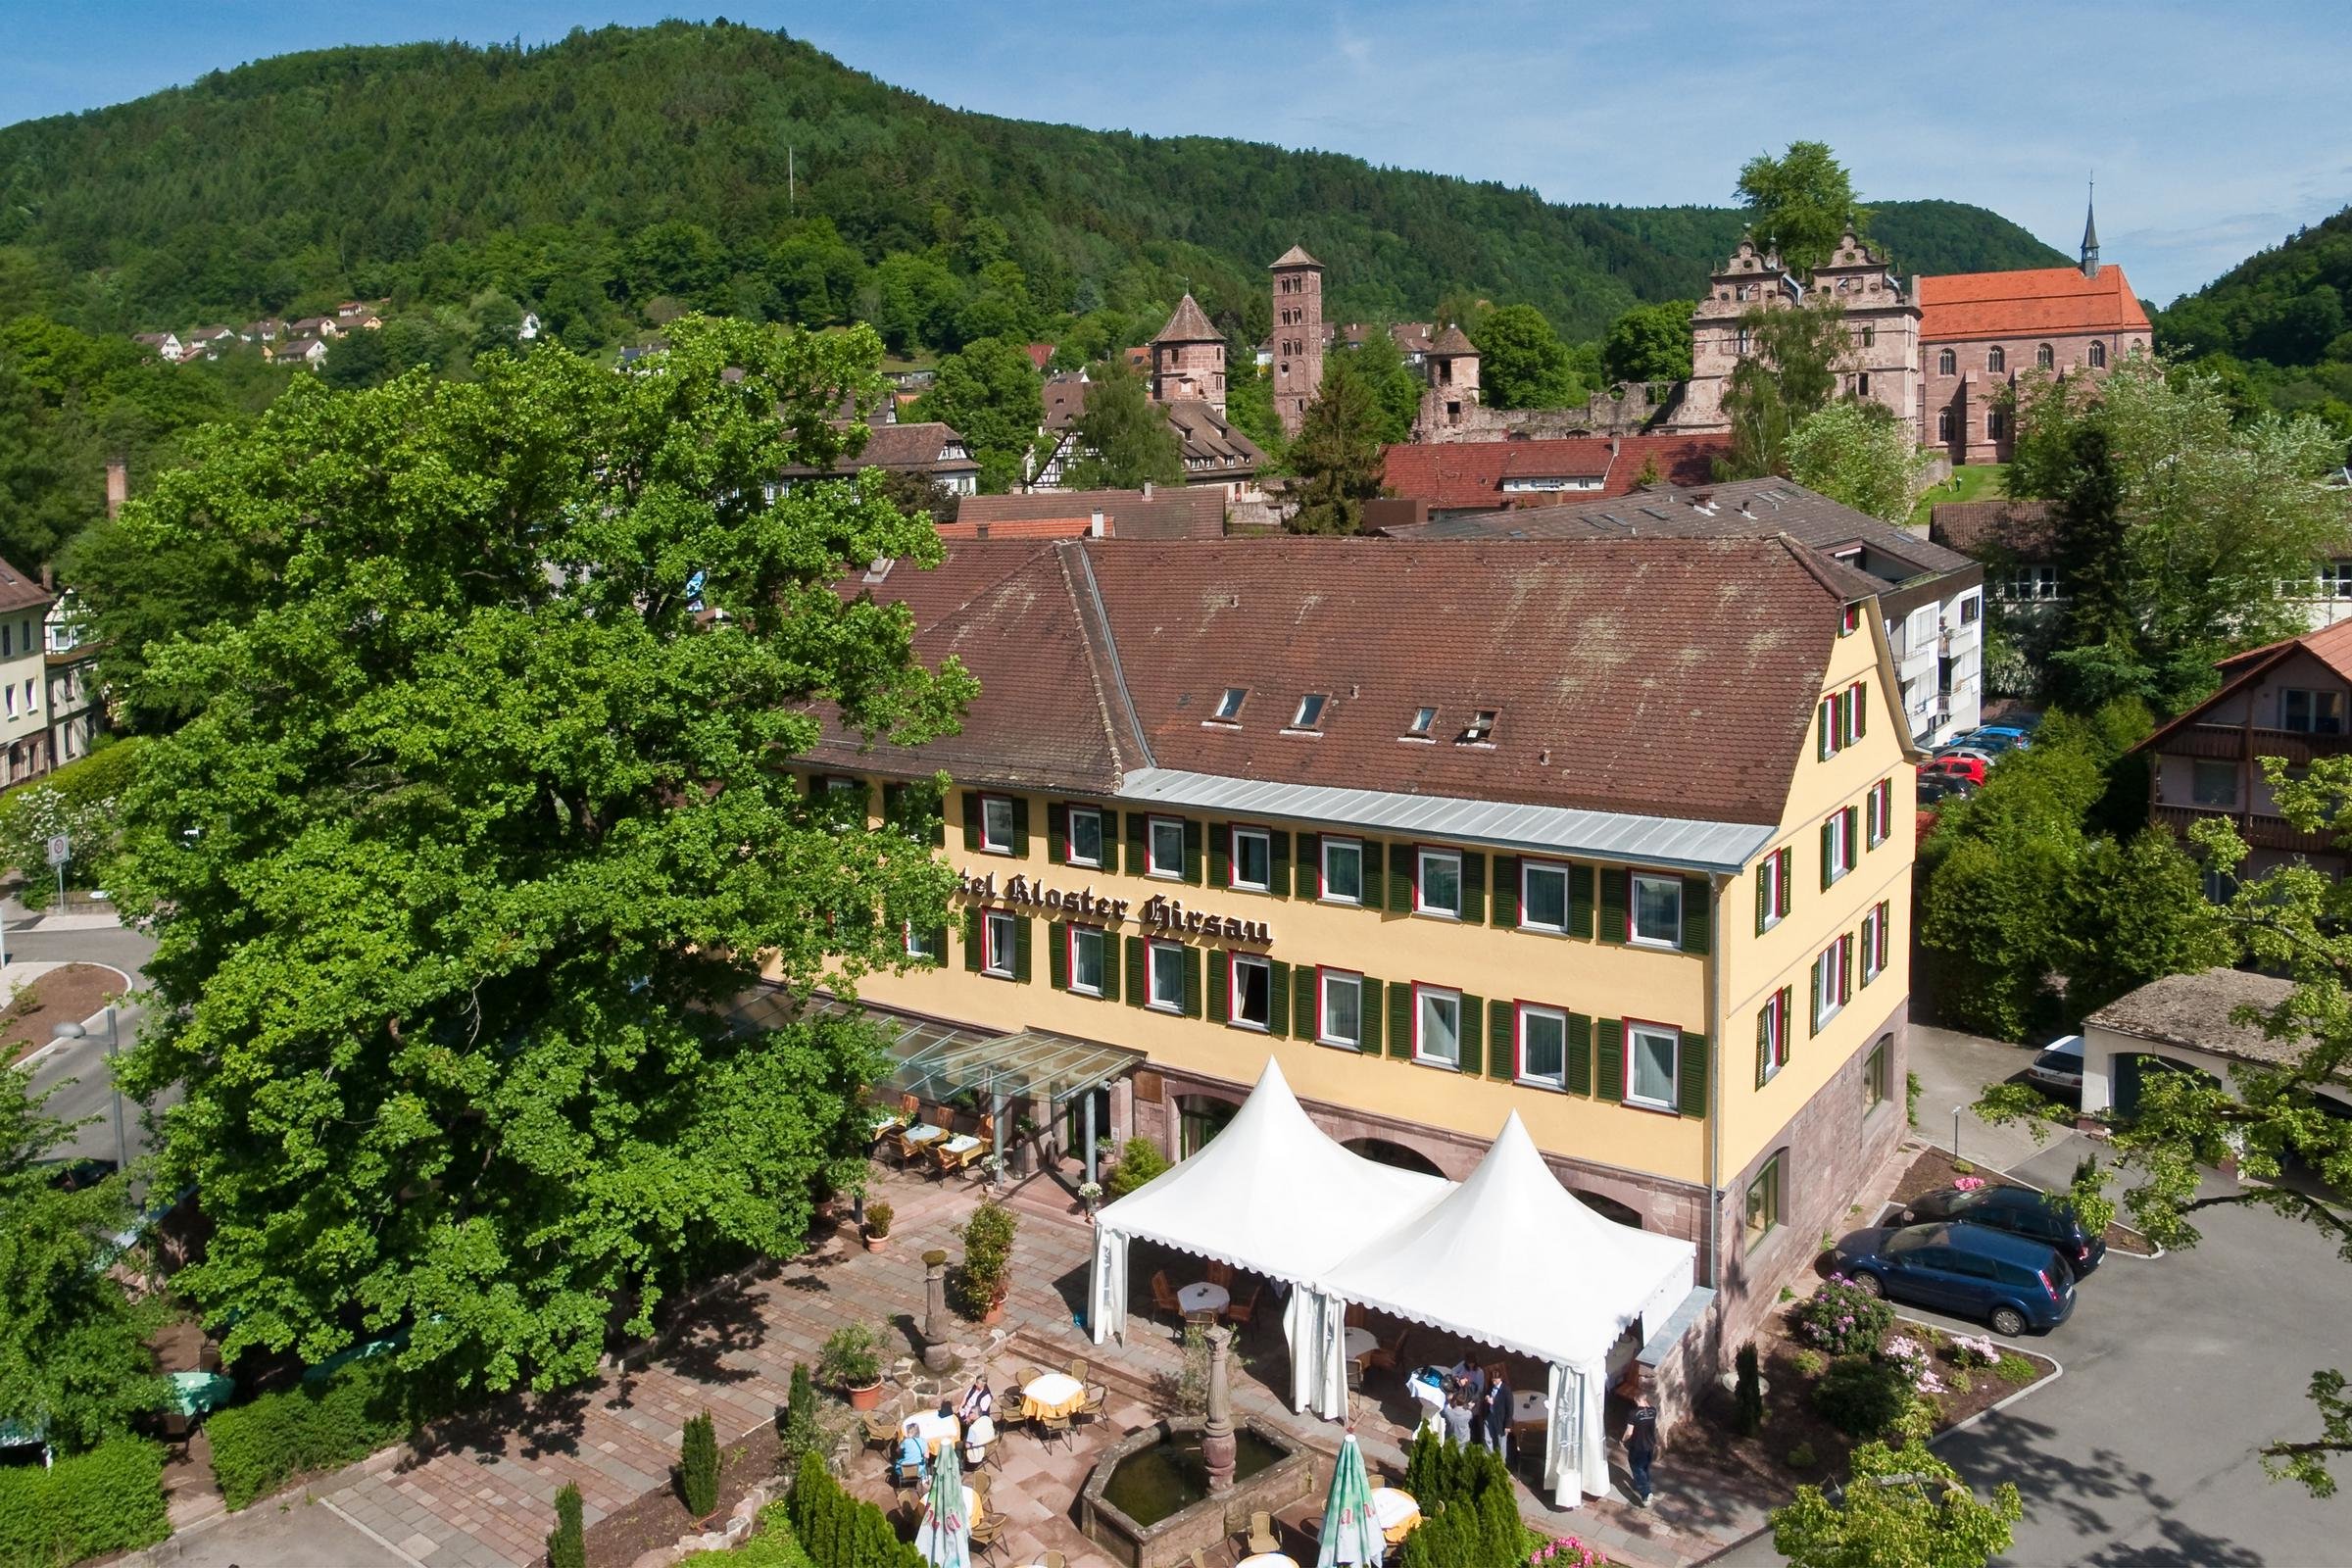 3 Tage Darf´s ein bisschen mehr sein – Hotel Kloster Hirsau (4 Sterne) in Calw, Baden-Württemberg inkl. Halbpension